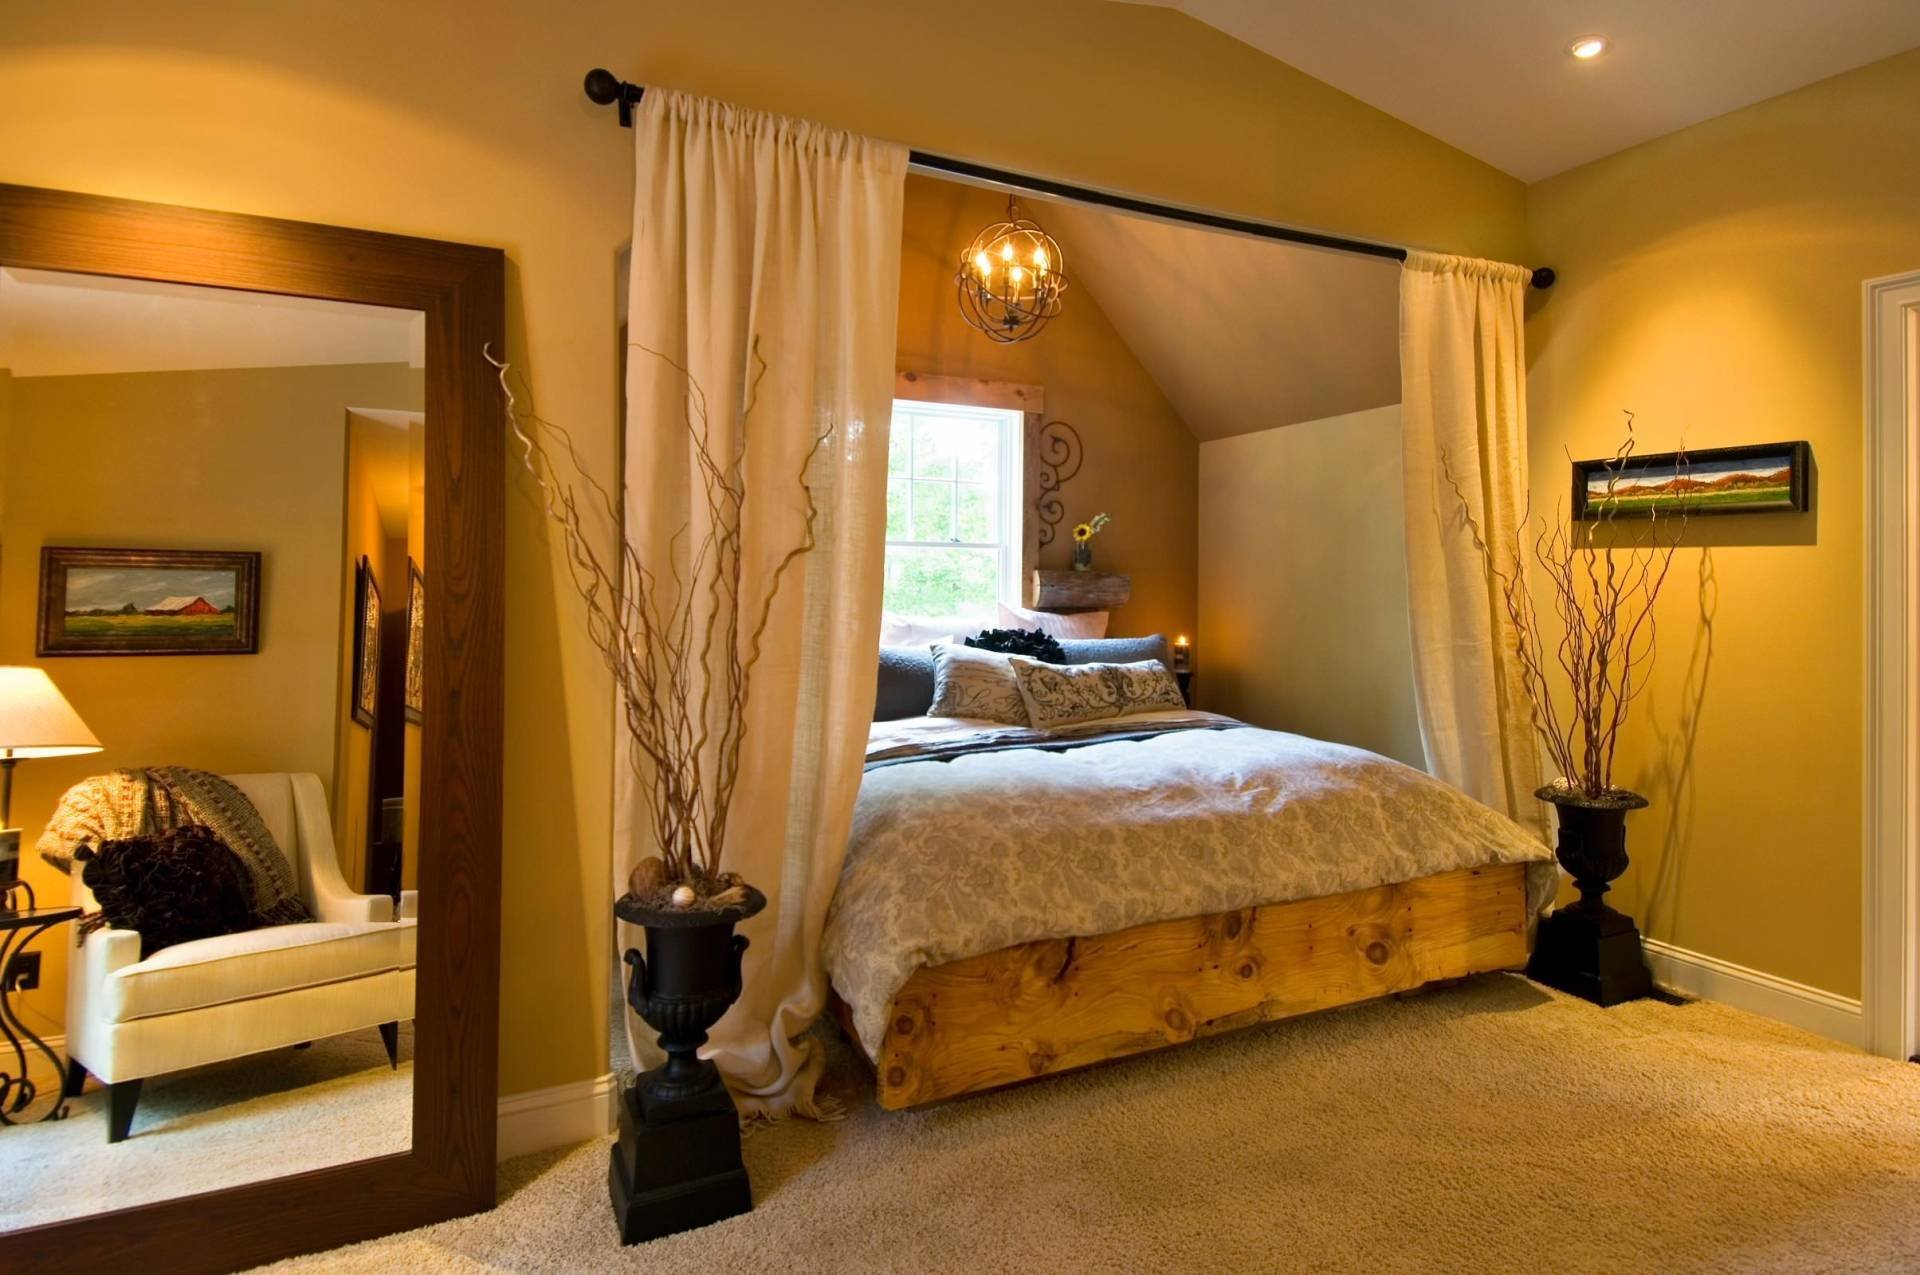 Как красиво и правильно заправить кровать, приемы, которые используют дизайнеры и горничные отелей - 15 фото